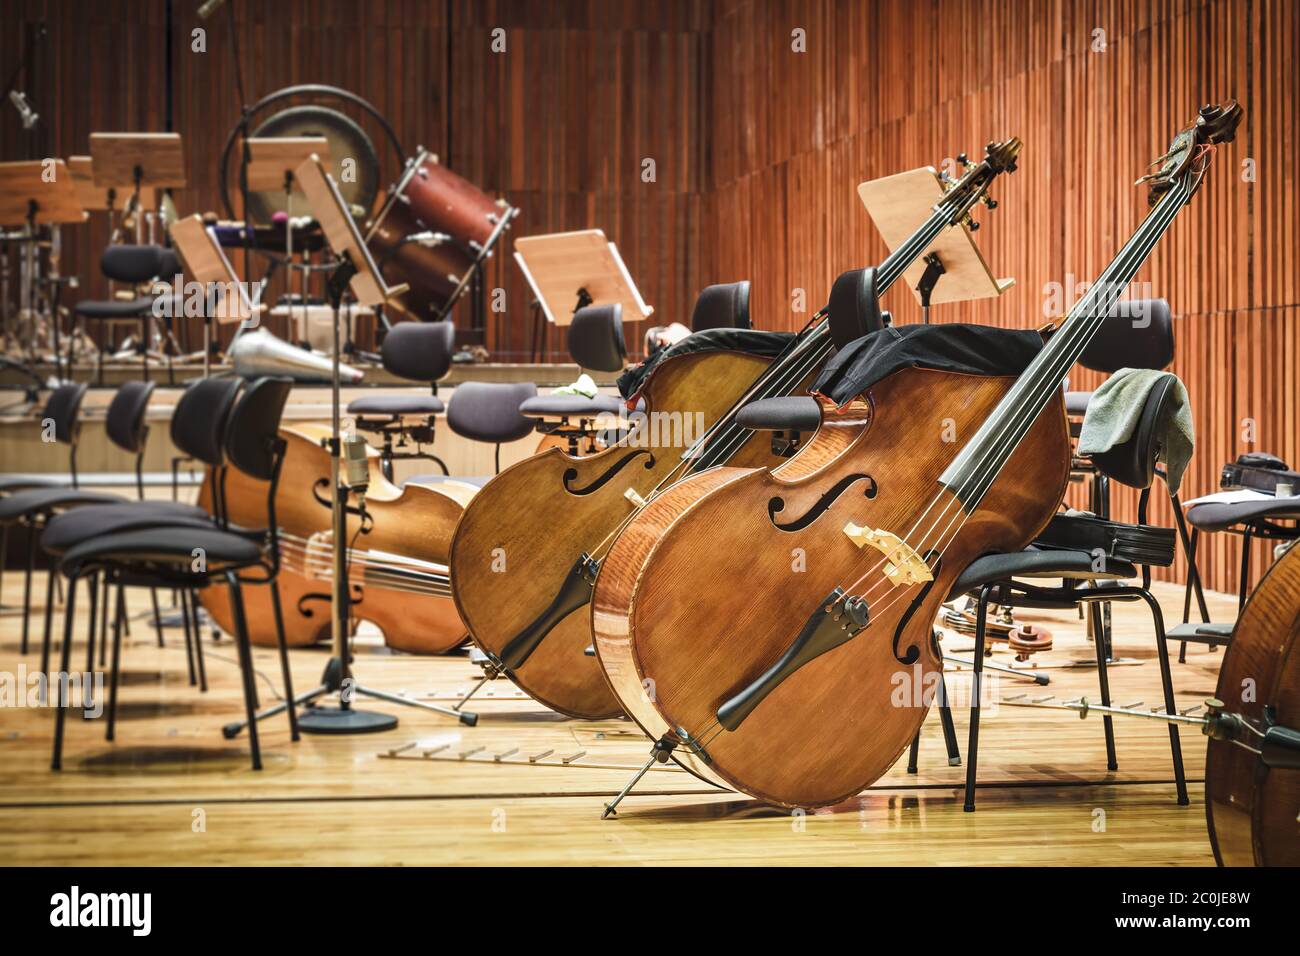 Instruments de musique violoncelle sur scène Banque D'Images